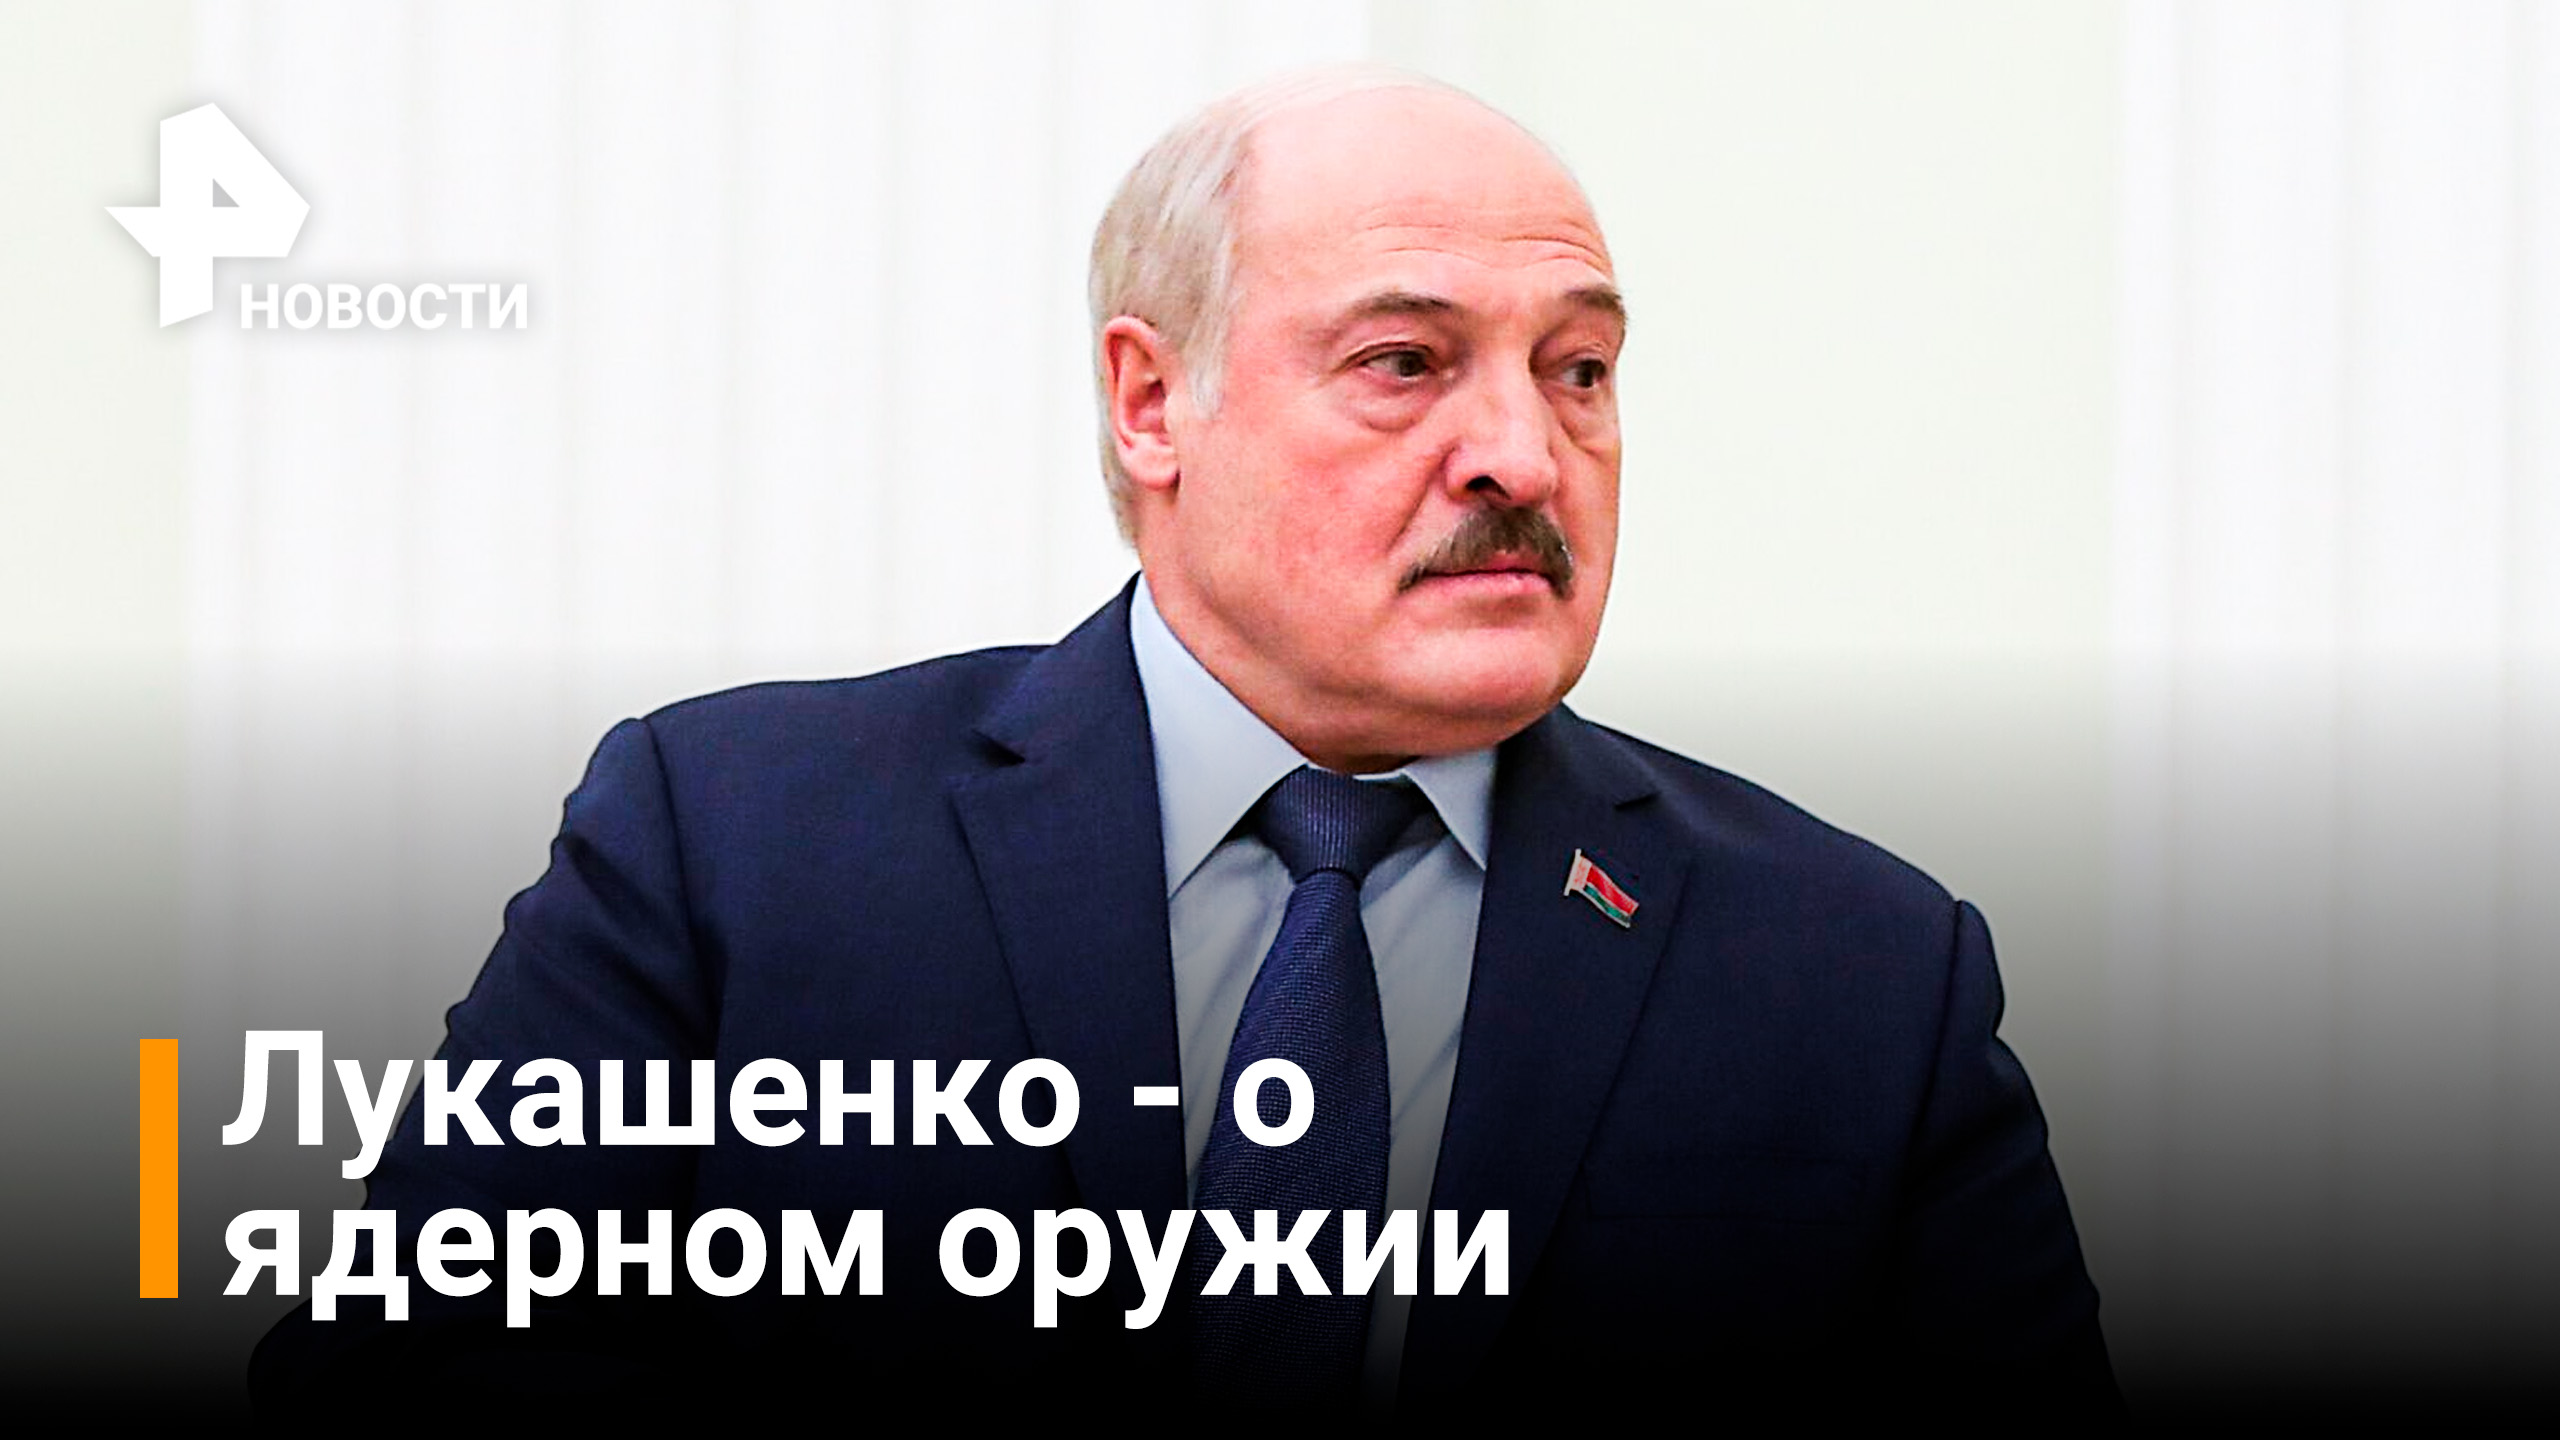 "Сорвёт с орбиты": Лукашенко - о применении ядерного оружия в конфликте с Украиной / РЕН Новости